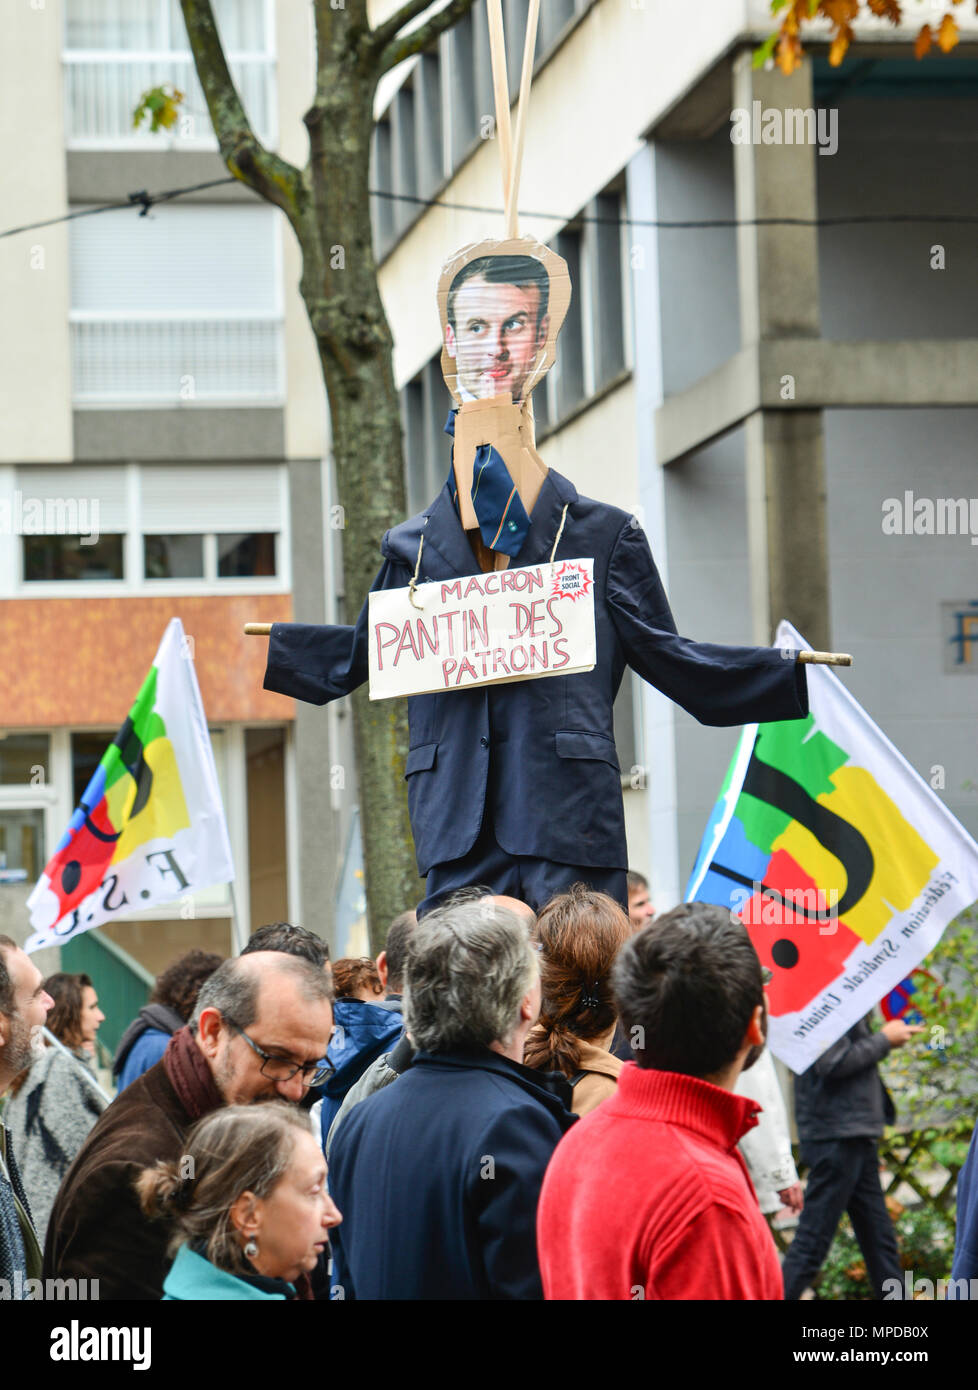 LE MANS, FRANCE - 10 octobre 2017 : La figure du président de la France Emmanuel Macron pendant une grève Banque D'Images